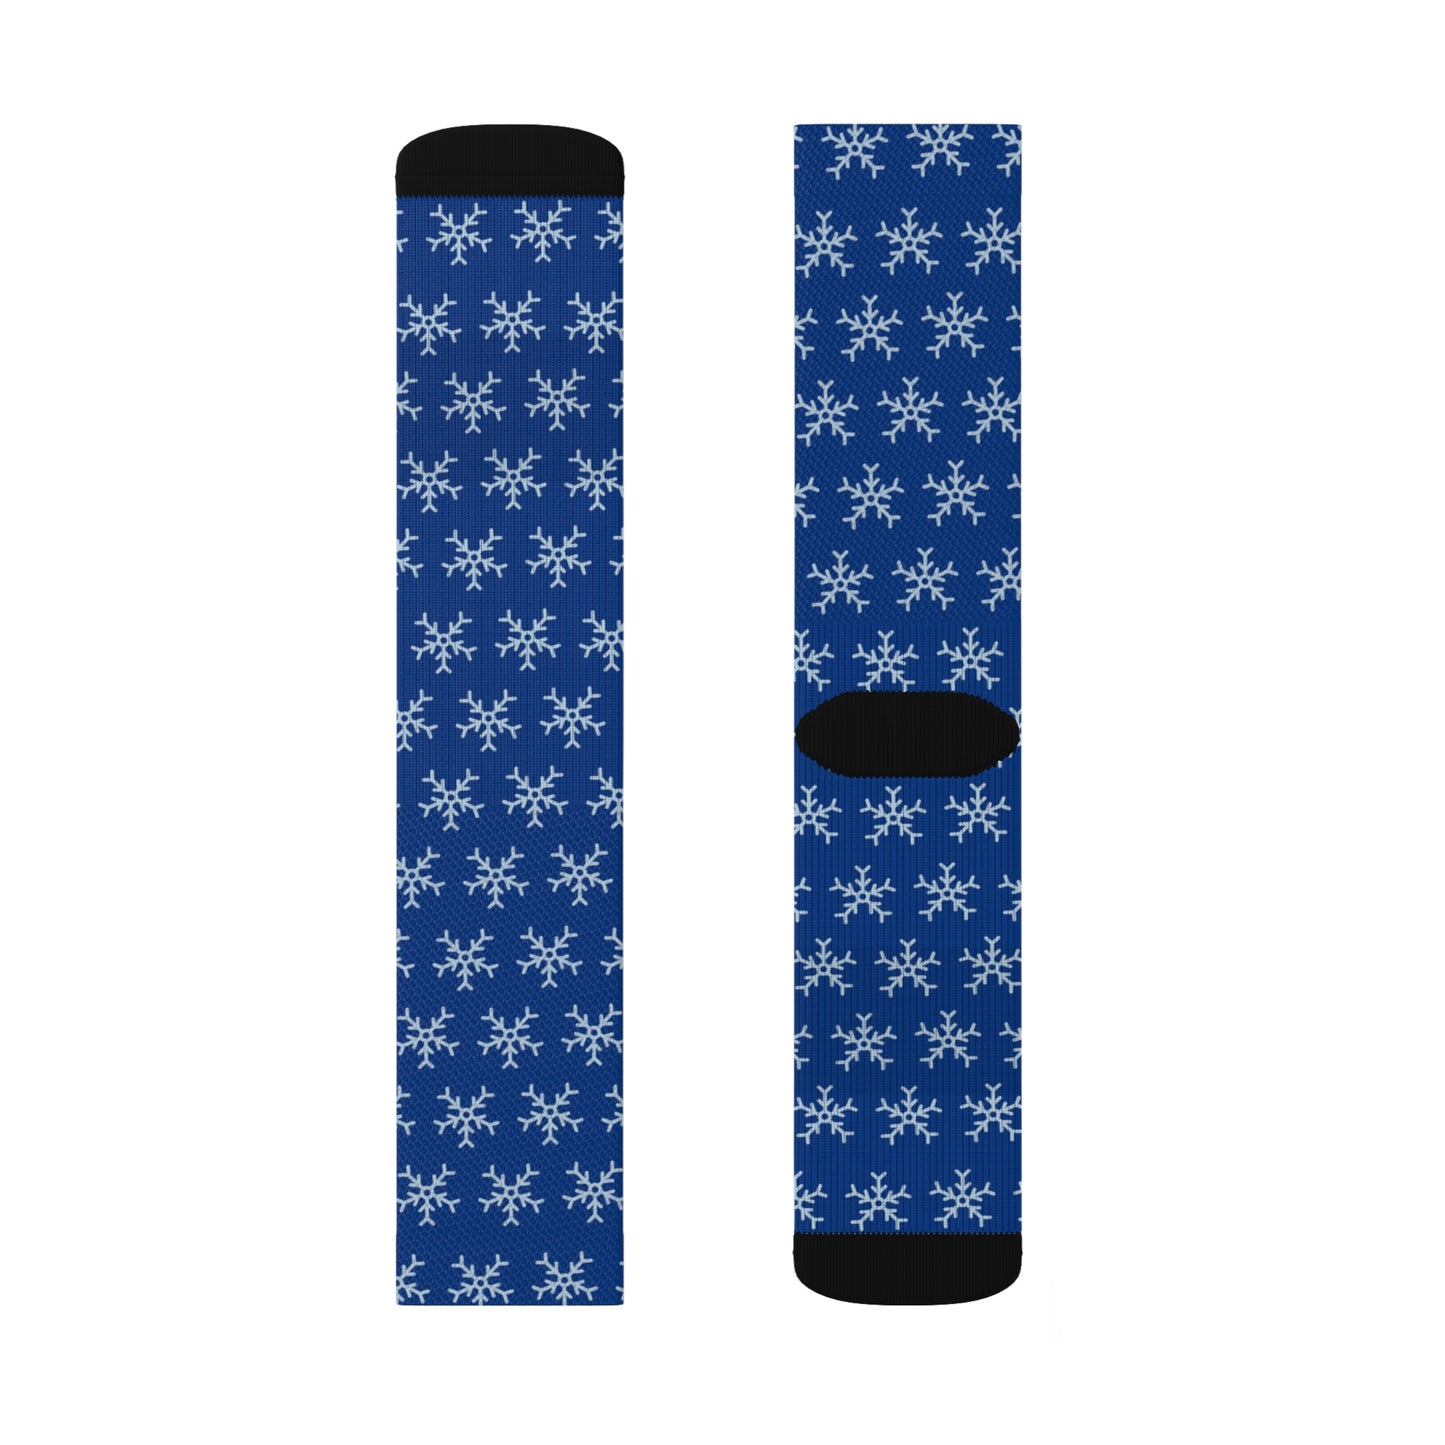 Blue Tube Socks: 3 sizes; Polyester blend; Snowflake design